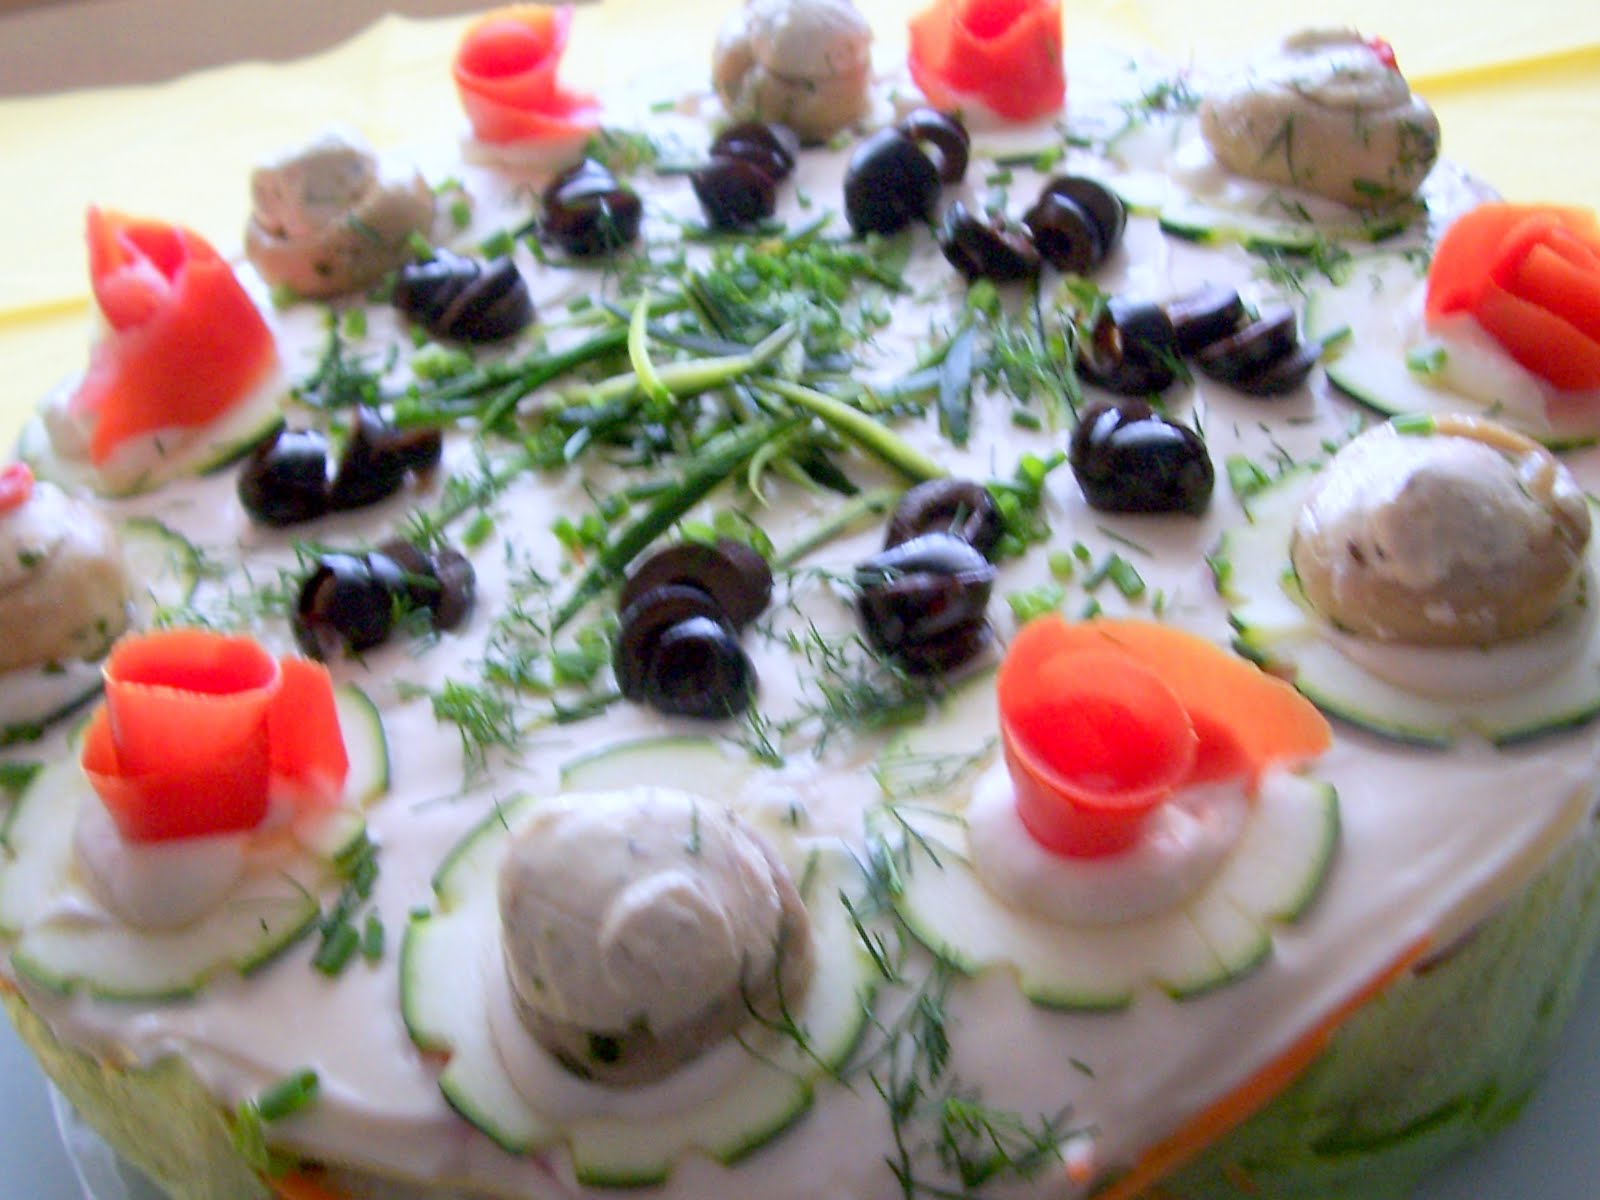 Schichtsalat Als Torte — Rezepte Suchen